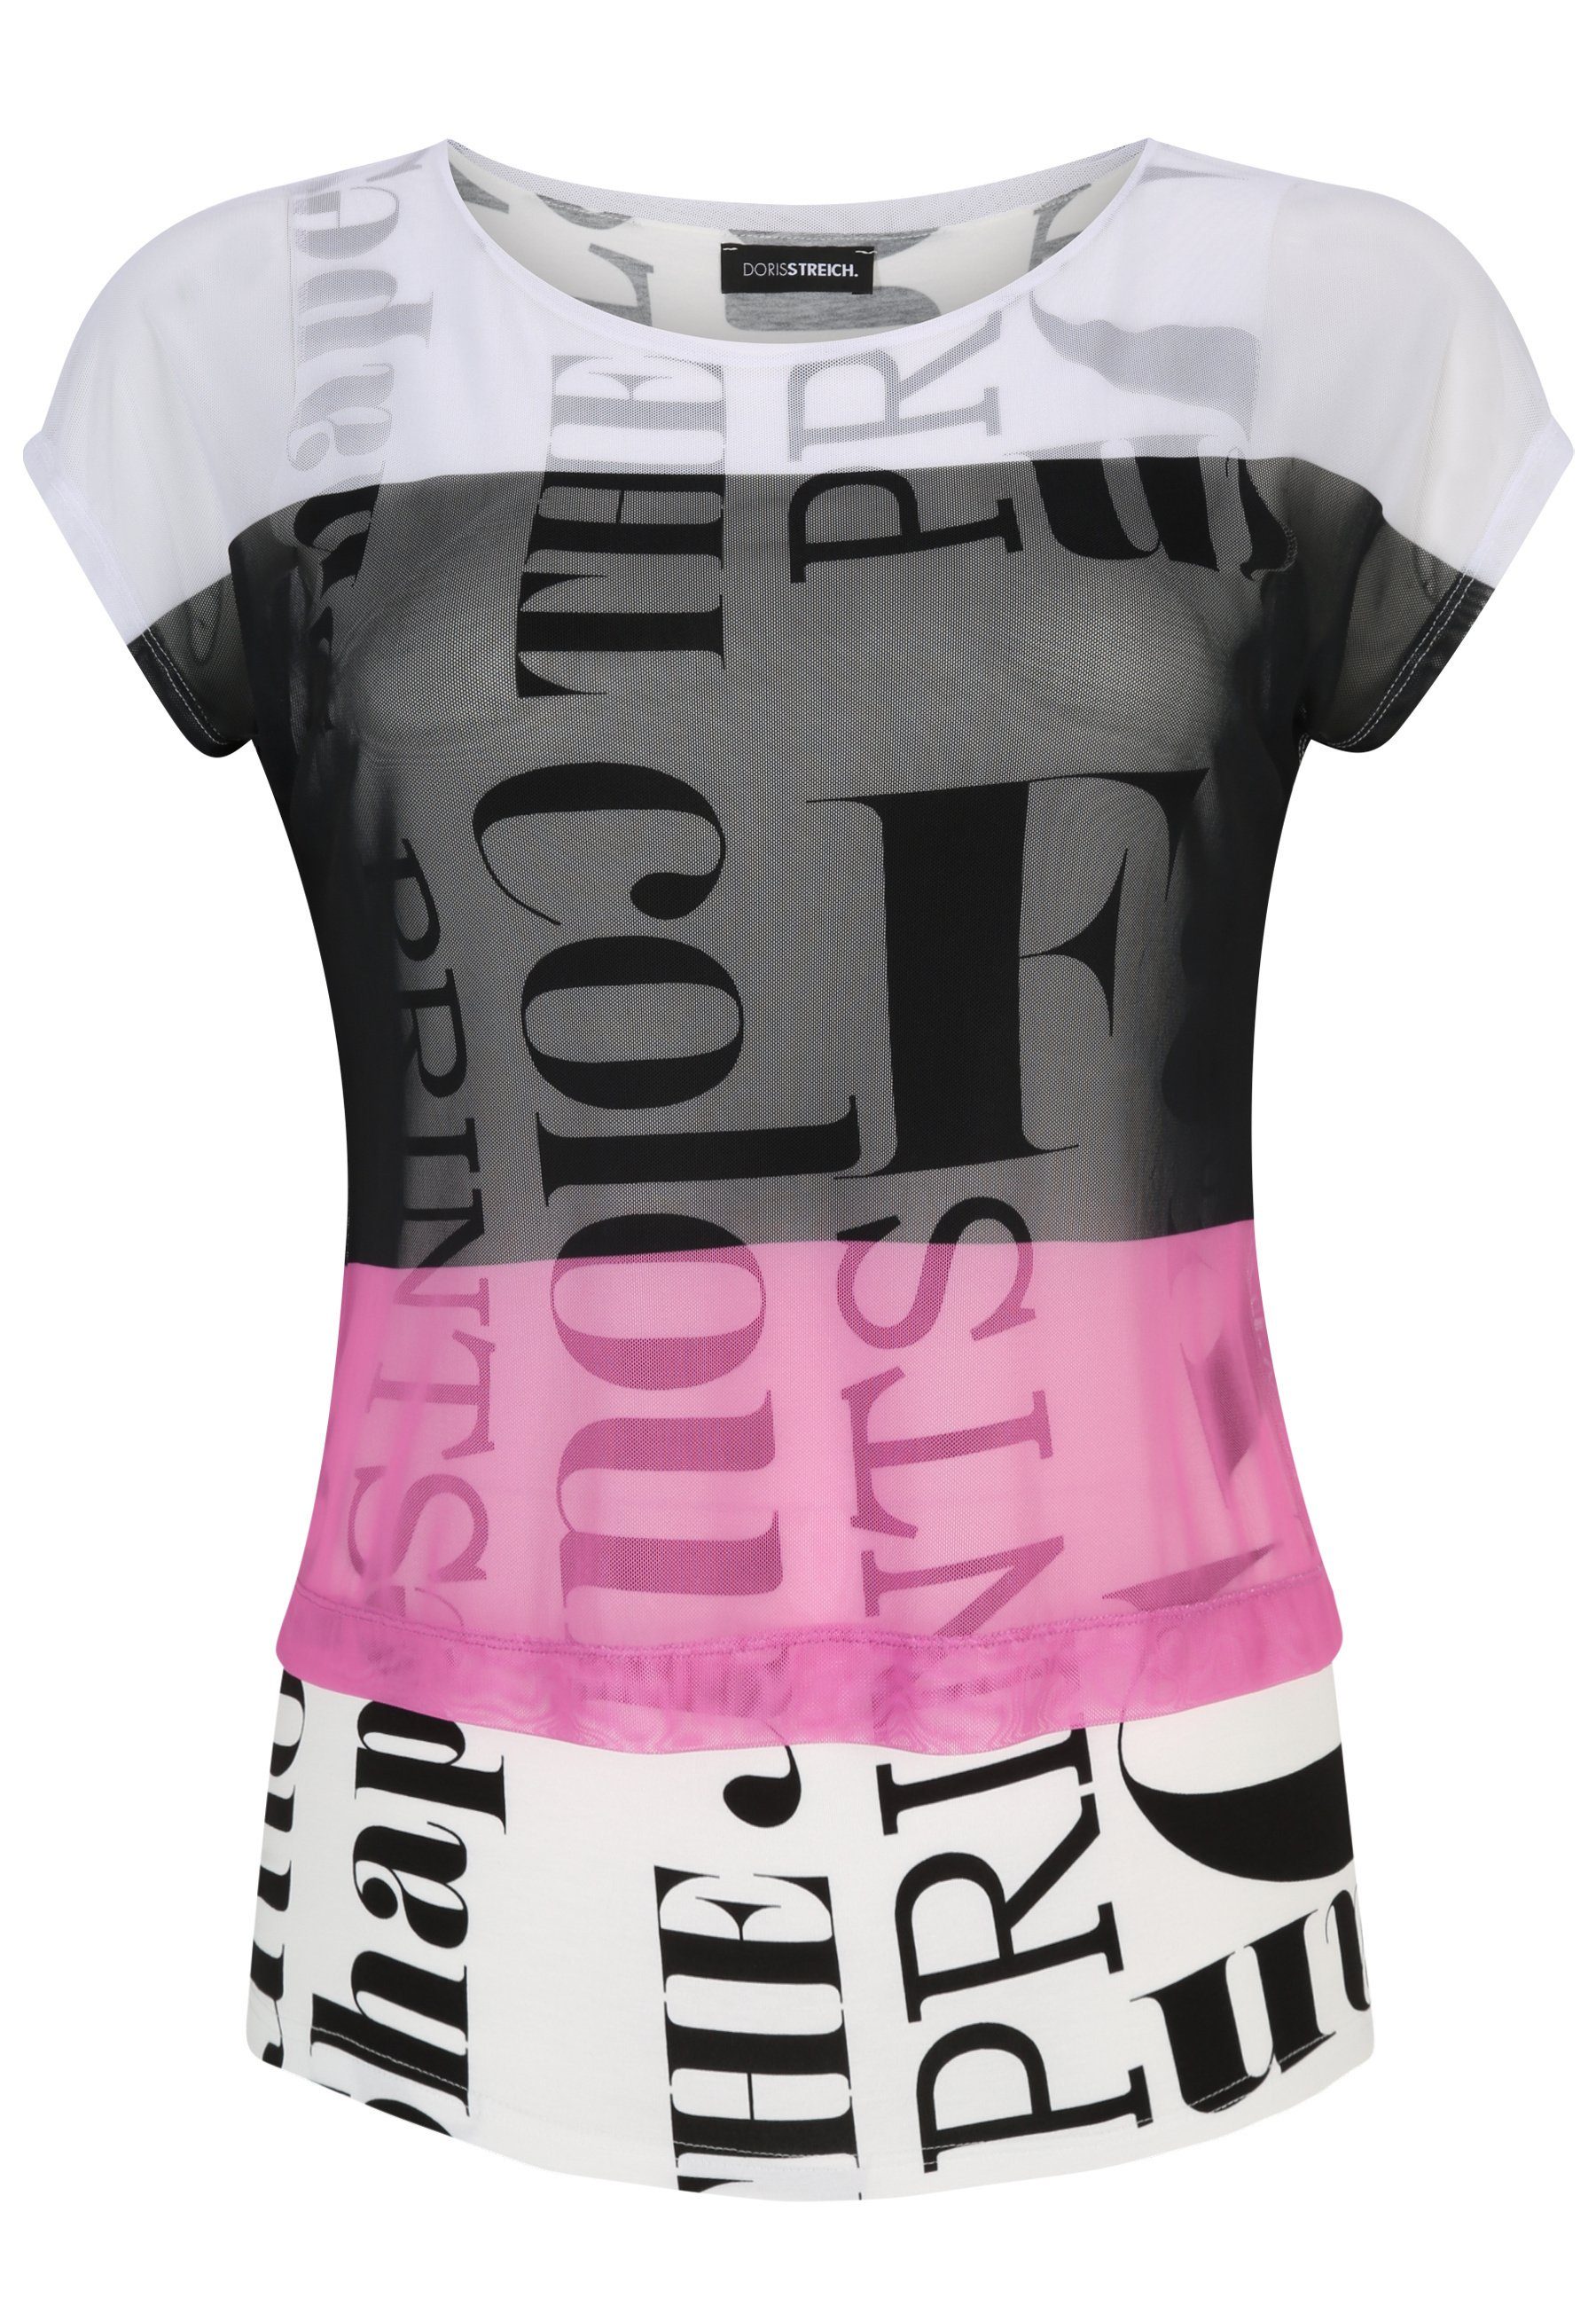 Doris Streich modernem Design 2-in-1-Shirt T-Shirt mit